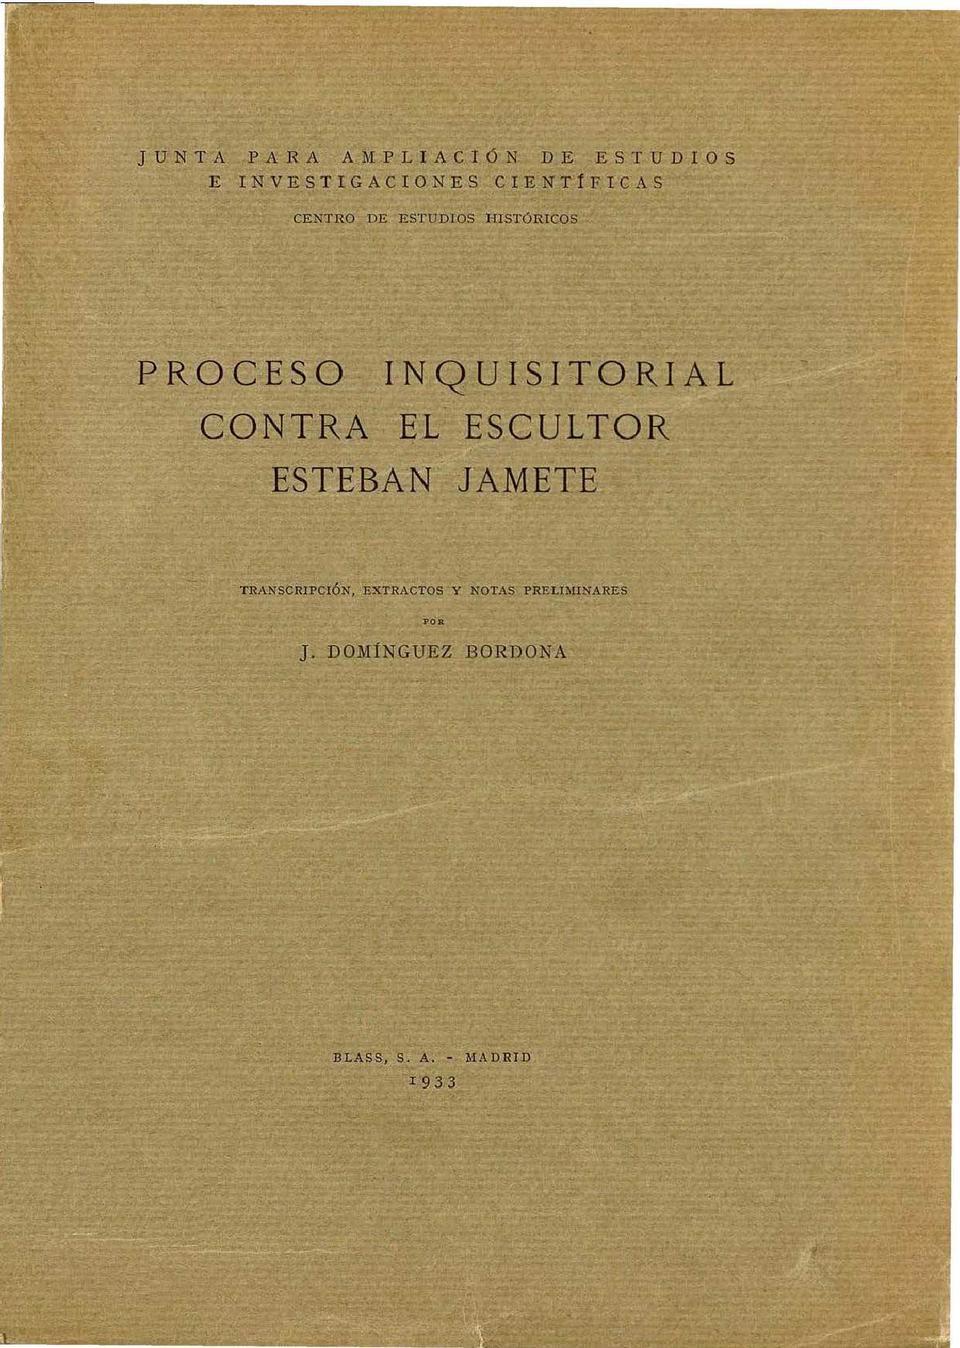 Proceso inquisitorial contra el escultor Esteban Jamete / transcripción, extractos y notas preliminares por J. Domínguez Bordona.-. [Monografía]